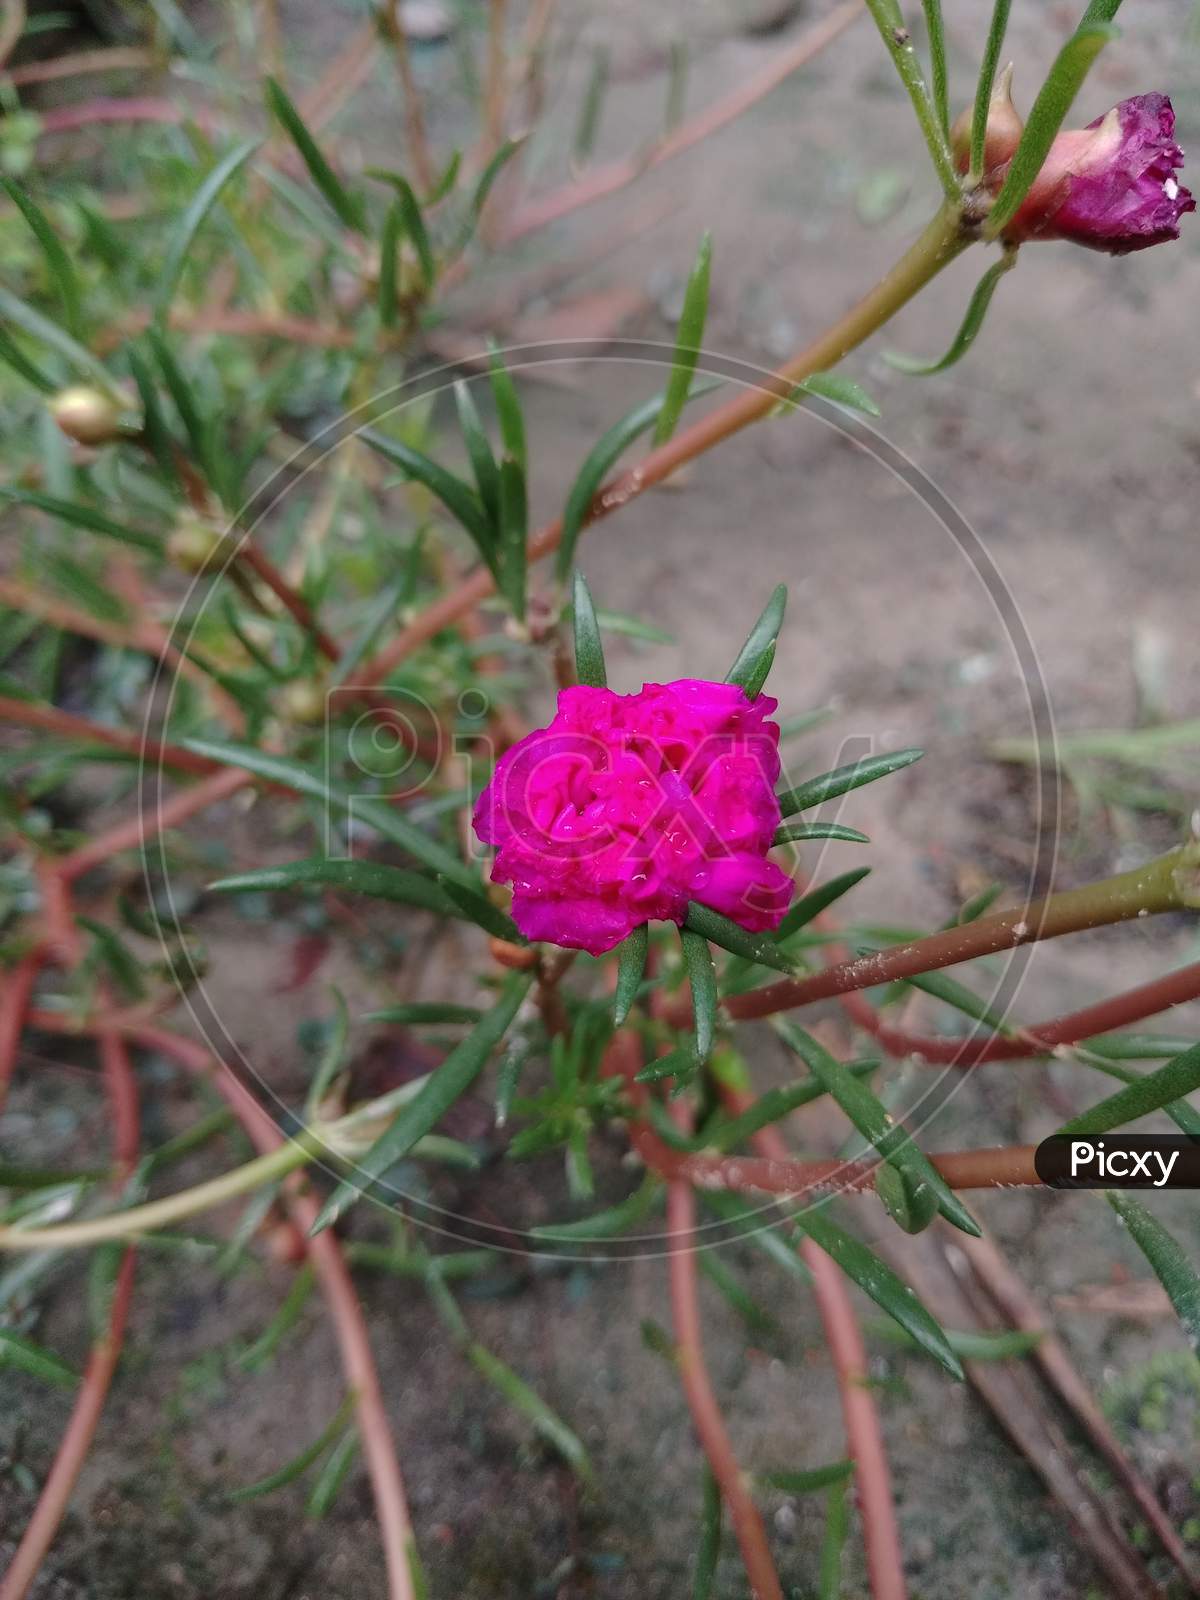 Its a amazing Moss-rose purslane